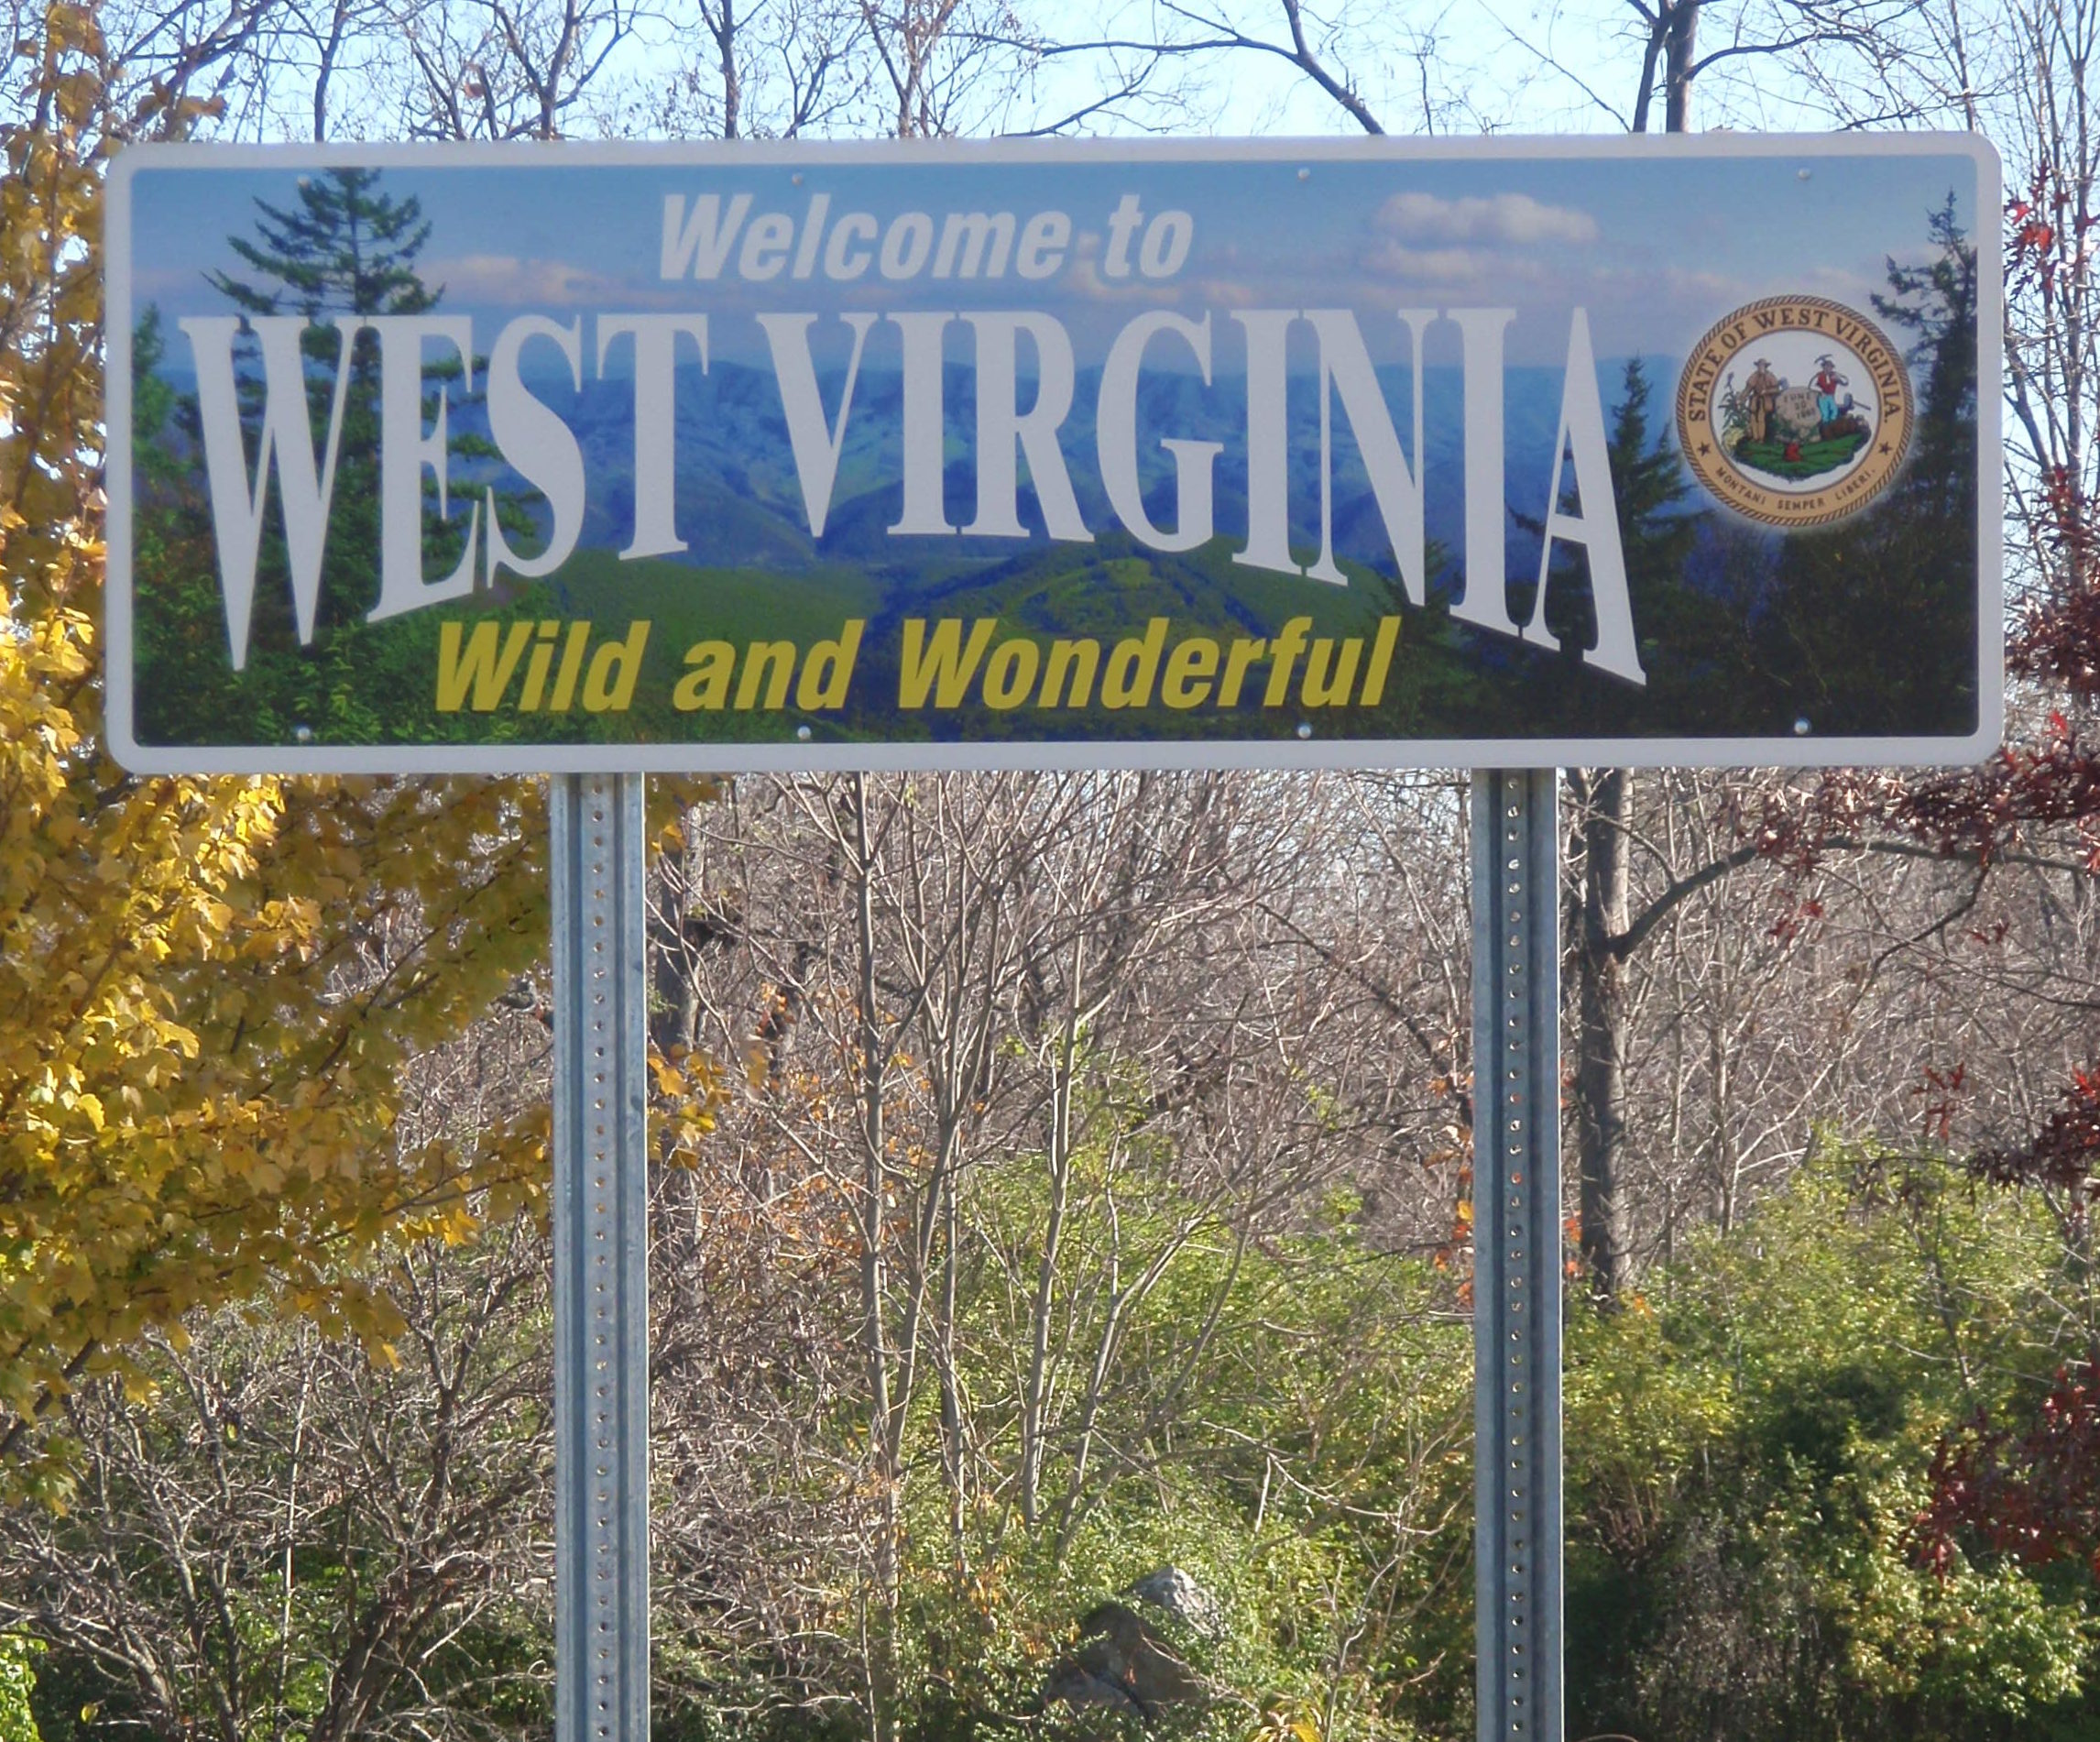 west virginia welcome - by Joel Kramer is licensed under CC BY 2.0